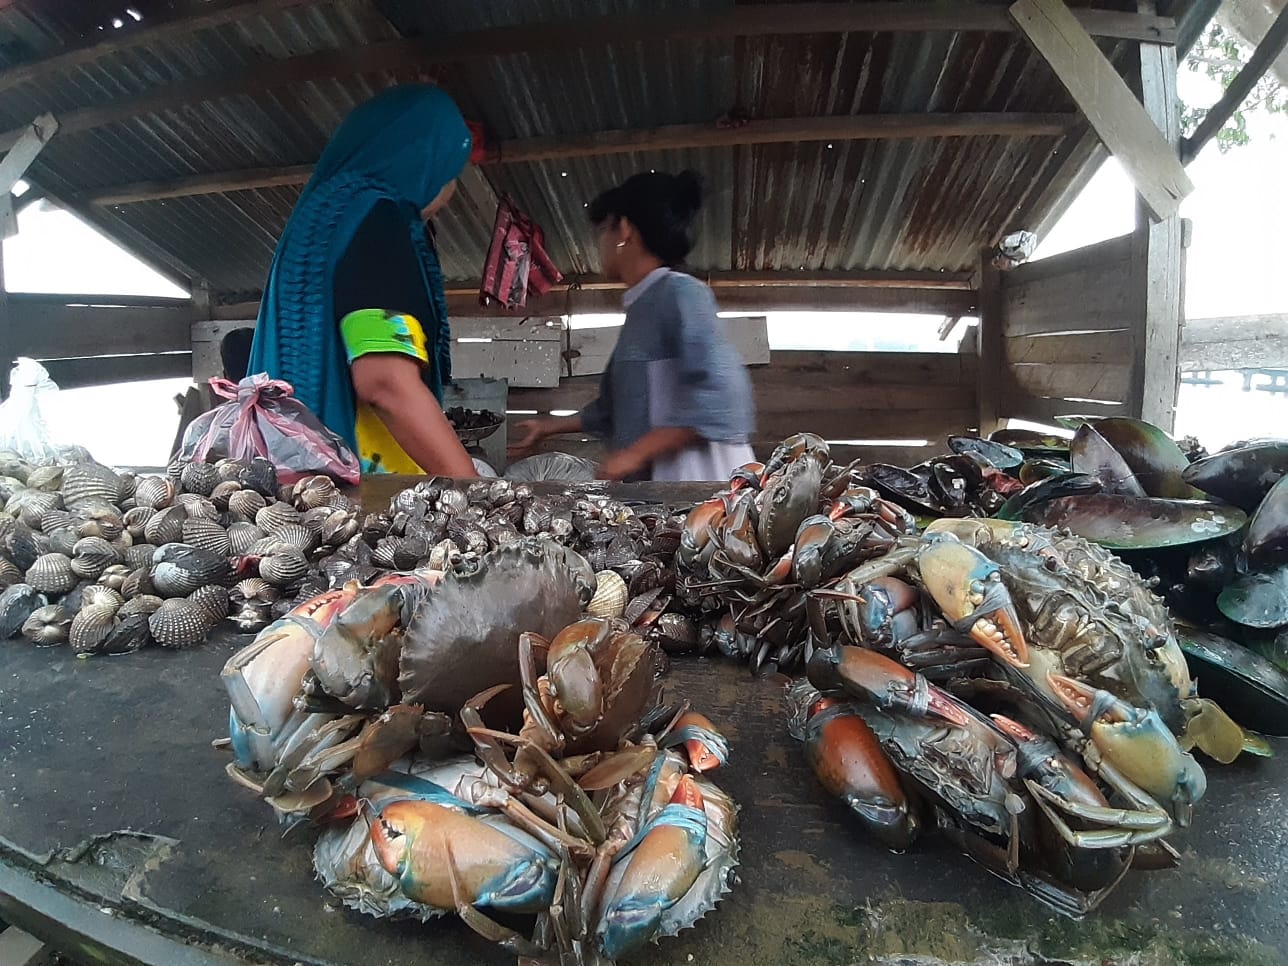 300 kg kepiting Aceh diekspor ke Thailand setiap hari